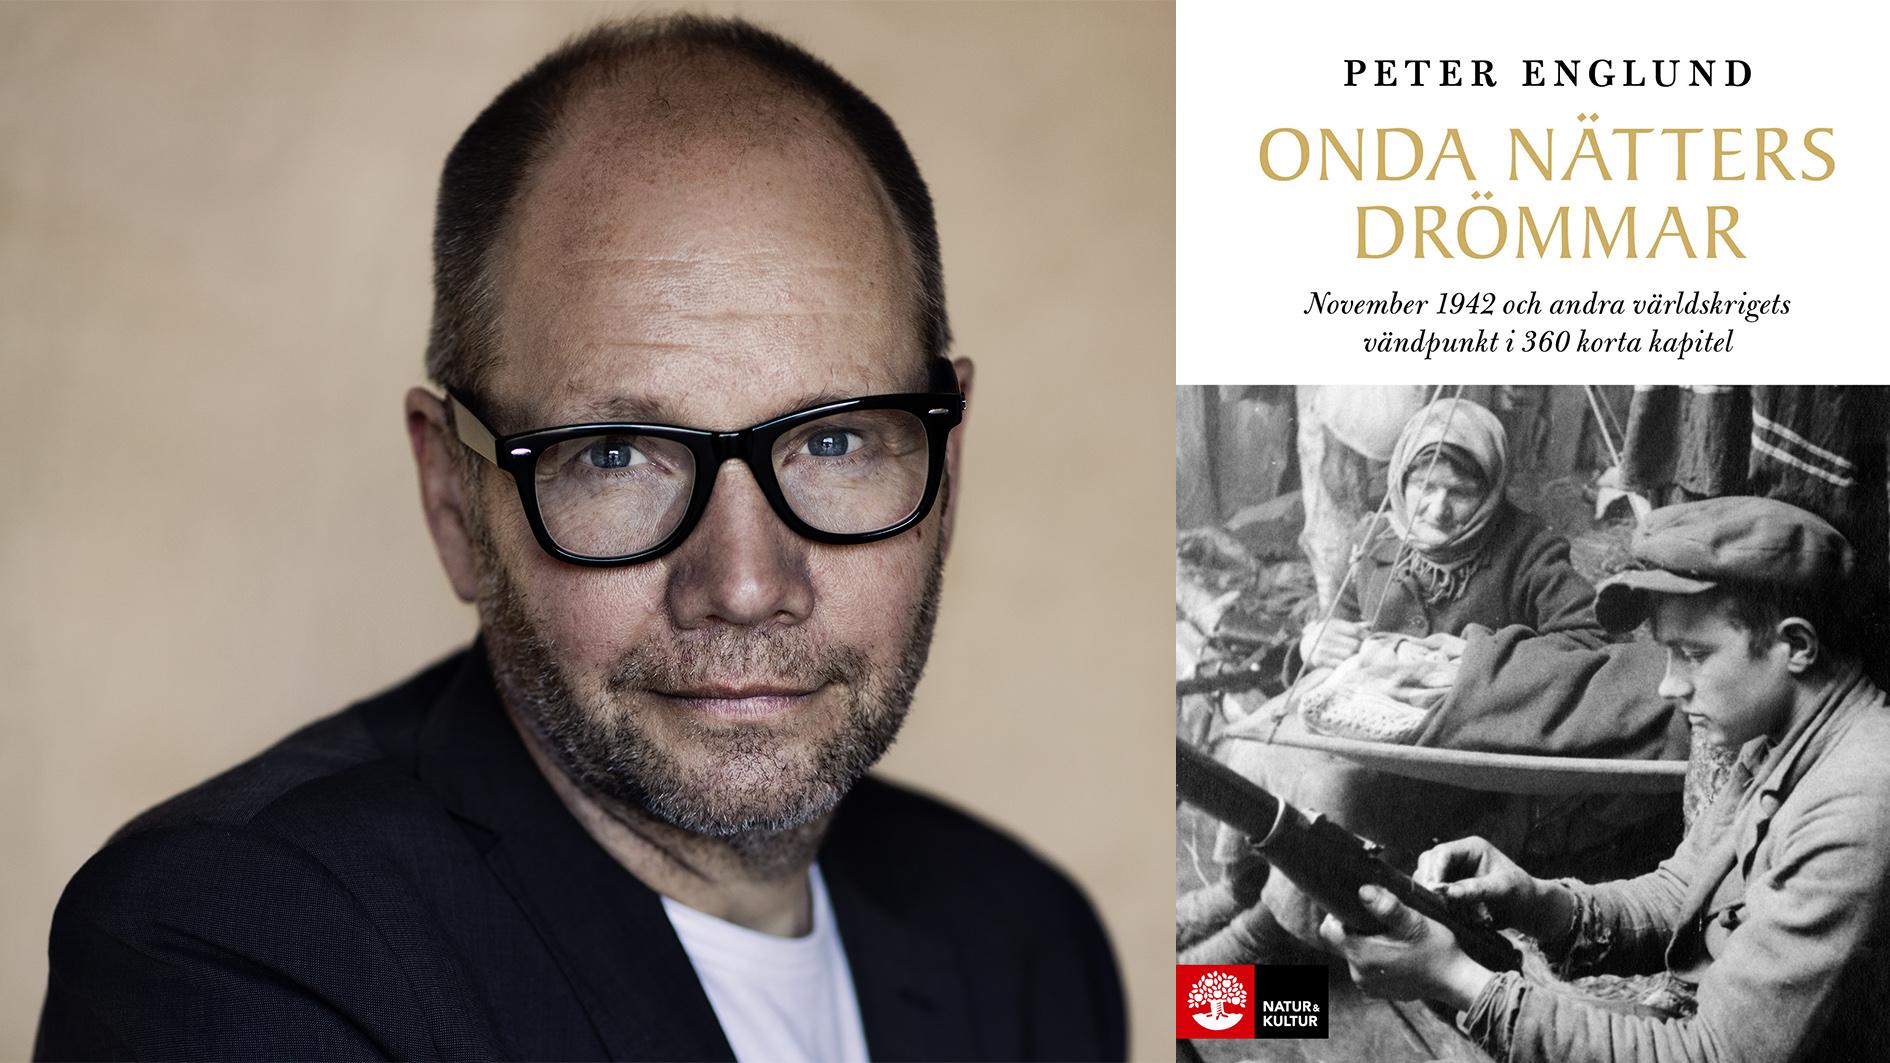 Peter Englund nya bok ”Onda nätters drömmar” är ”ett heroiskt, eller snarare antiheroiskt, försök att greppa ett världskrig ur fyrtio personers enskilda vinklar” skriver Göran Greider i sin recension.